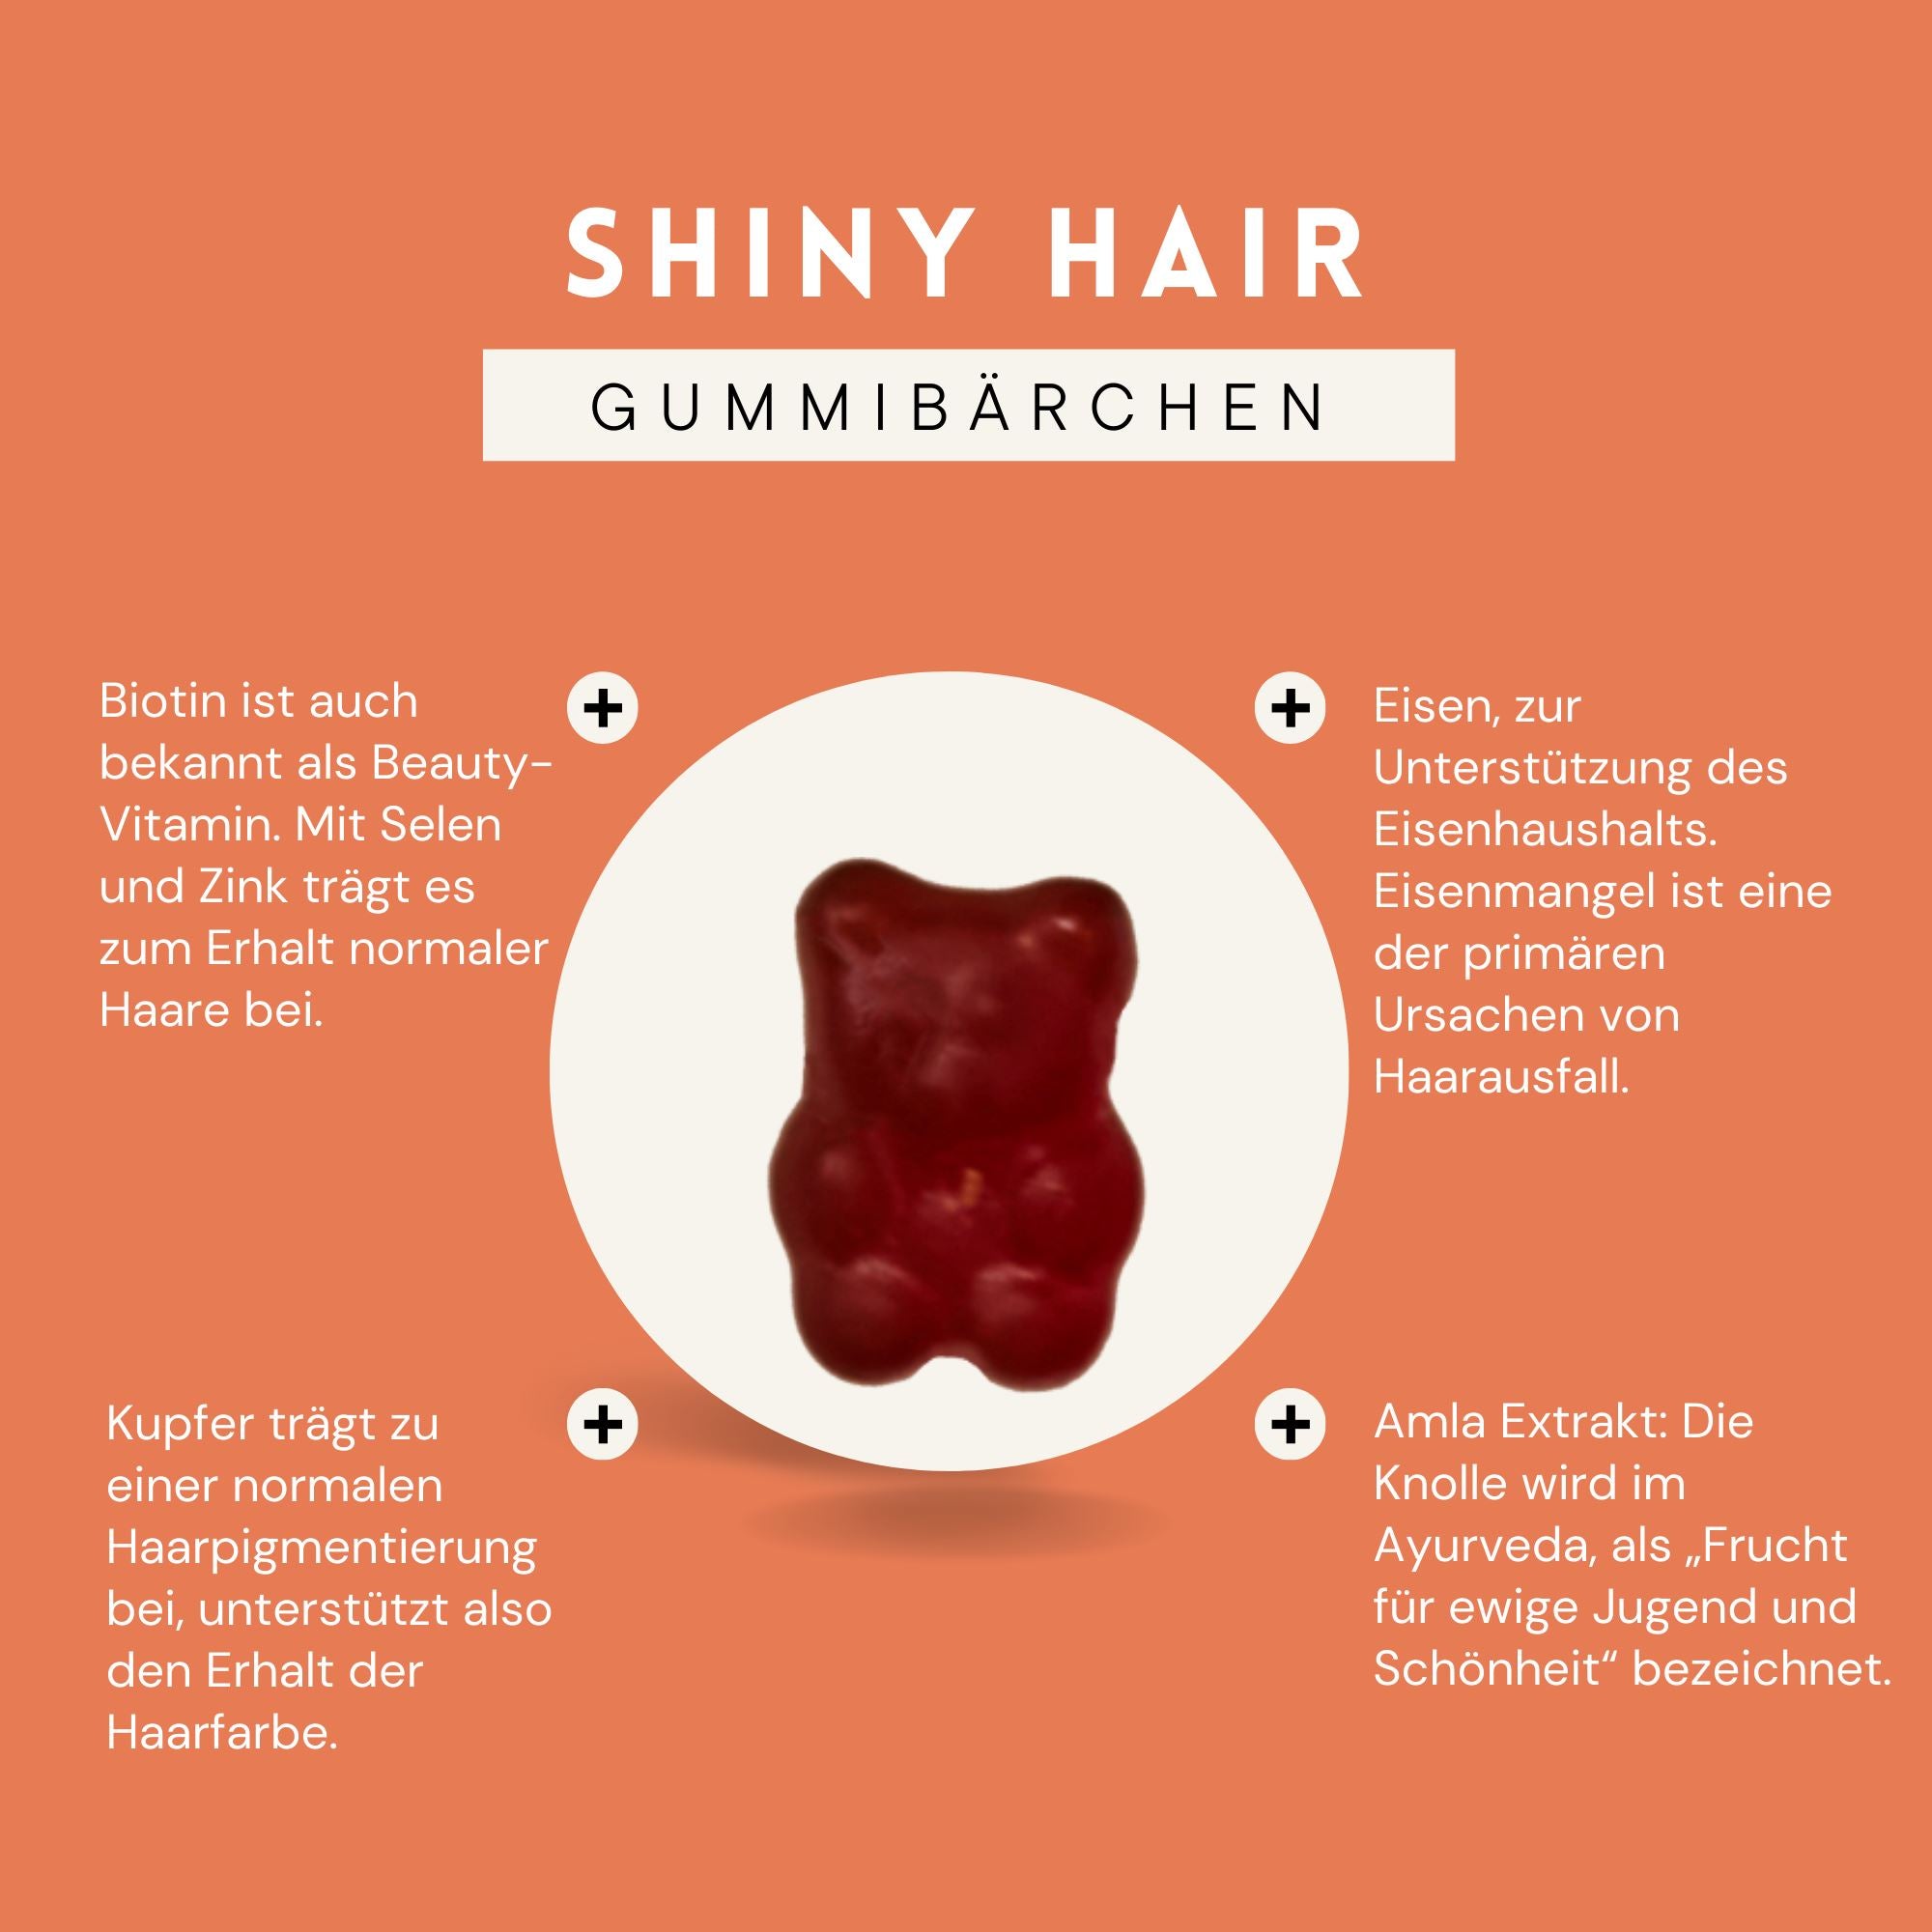 Shiny Hair Gummies gumtamin 